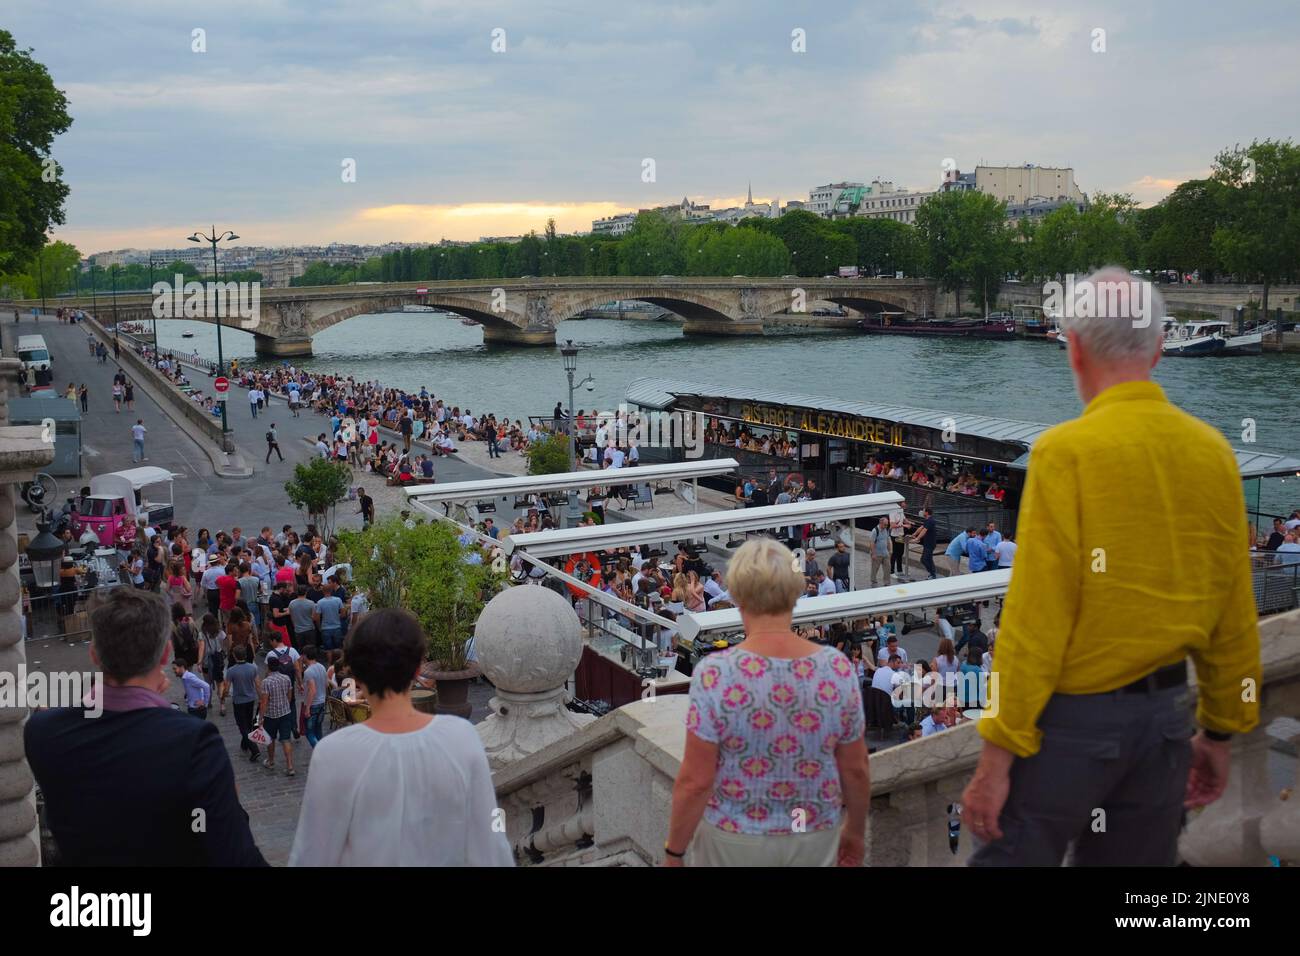 Zwei Paare gehen die Stufen hinunter, um sich der riesigen Menschenmenge anzuschließen, die an der seine hängt. Schöner Sommertag im Freien in Paris, Frankreich. Stockfoto